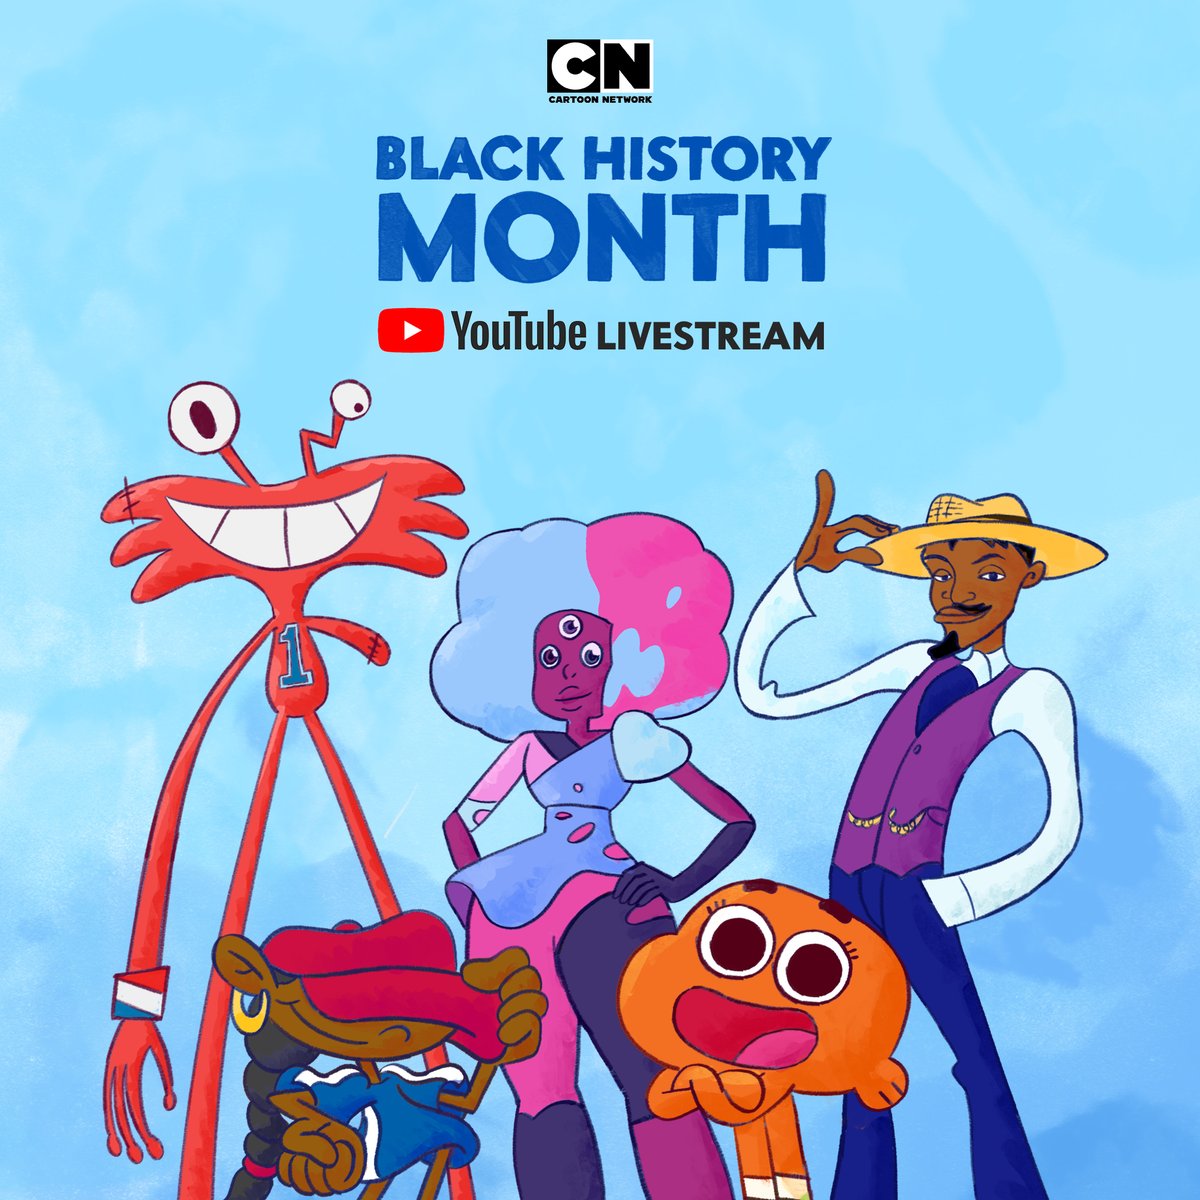 [閒聊] 卡通頻道慶祝黑人歷史月